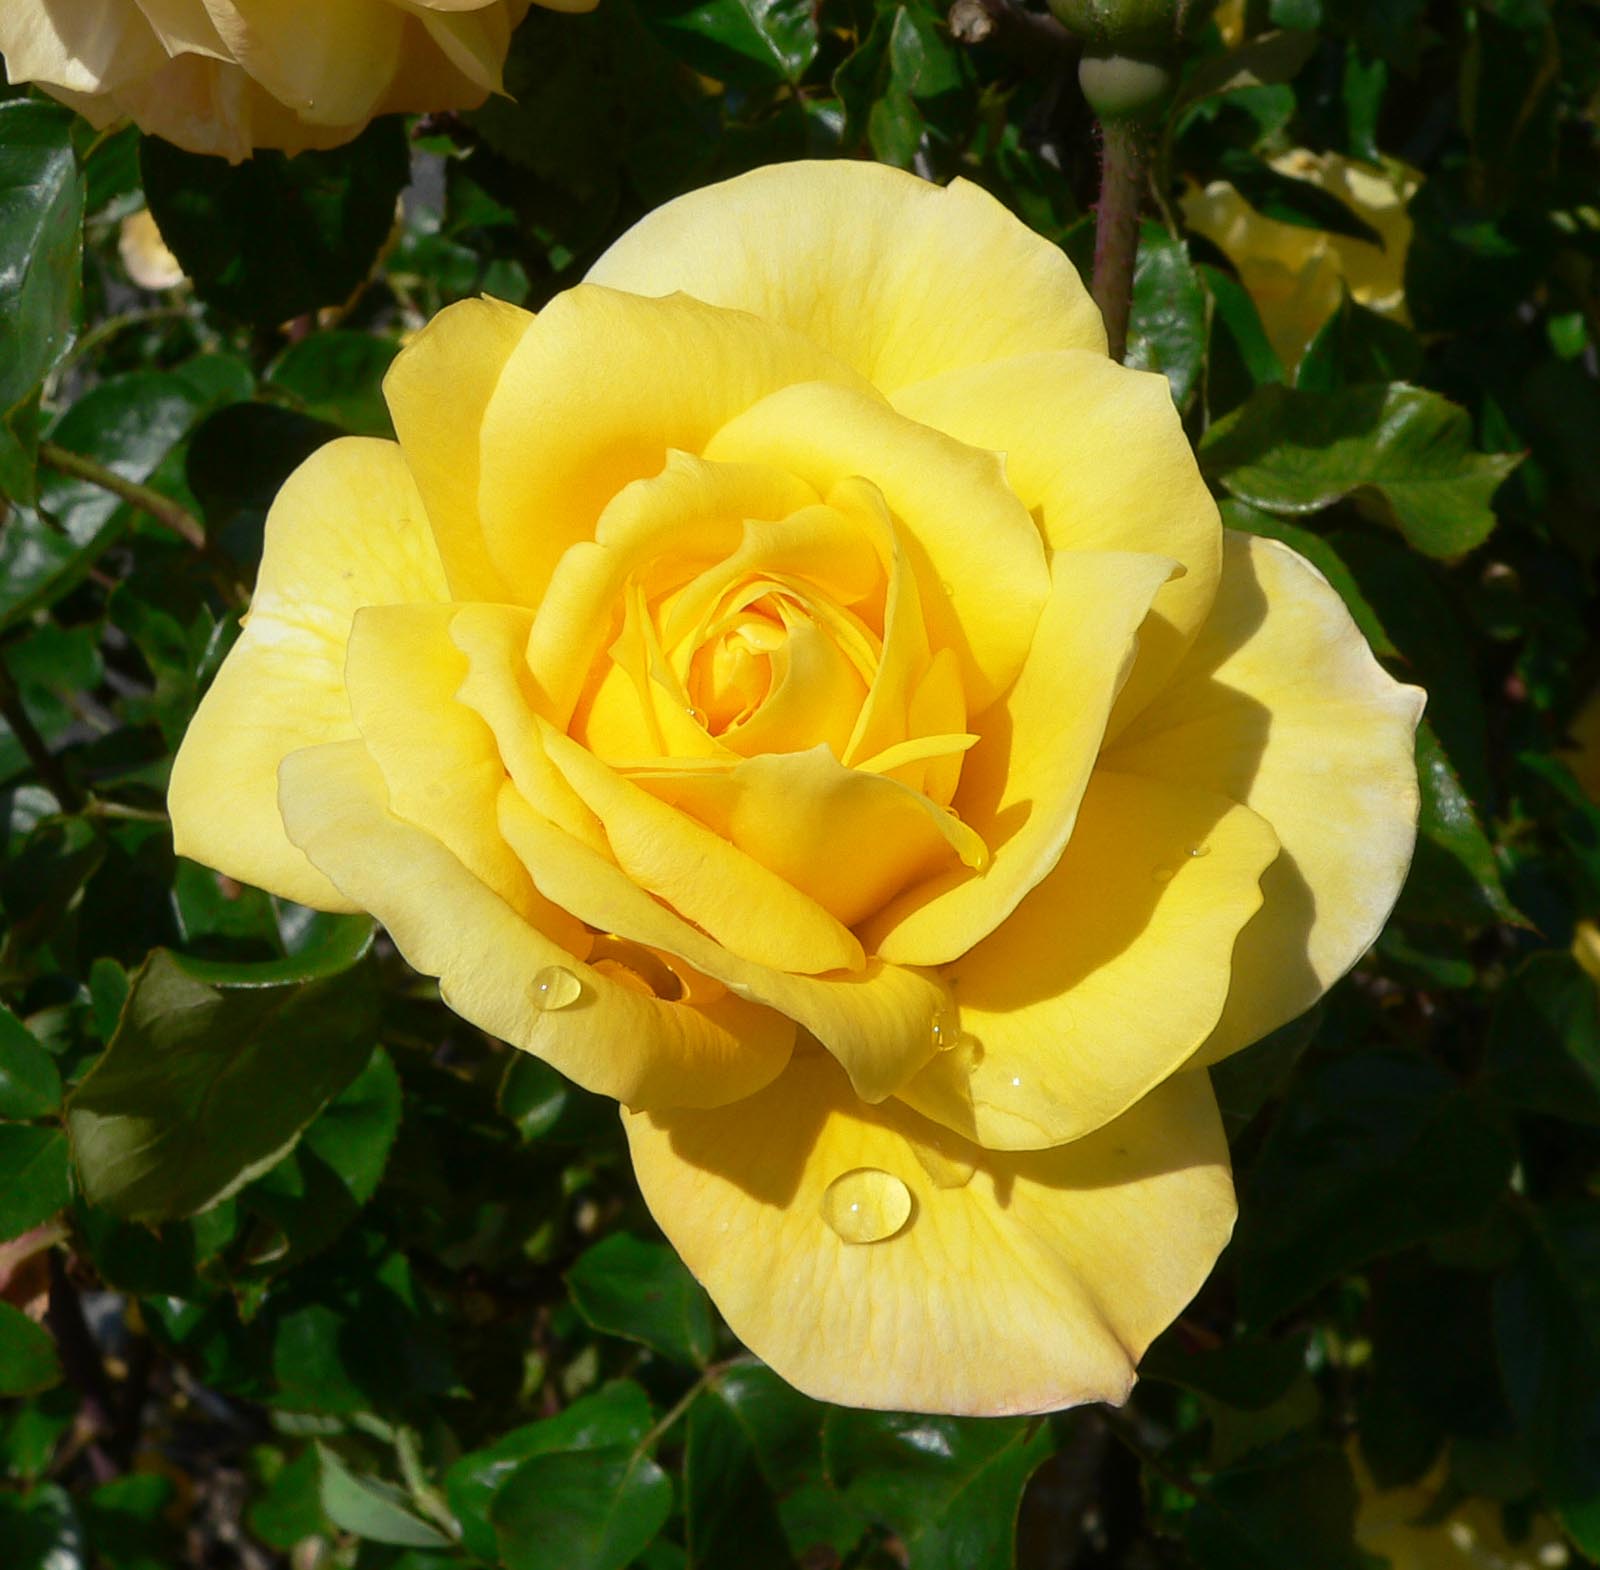 Sett rosebusk i en solrik utstilling slik at den blomstrer